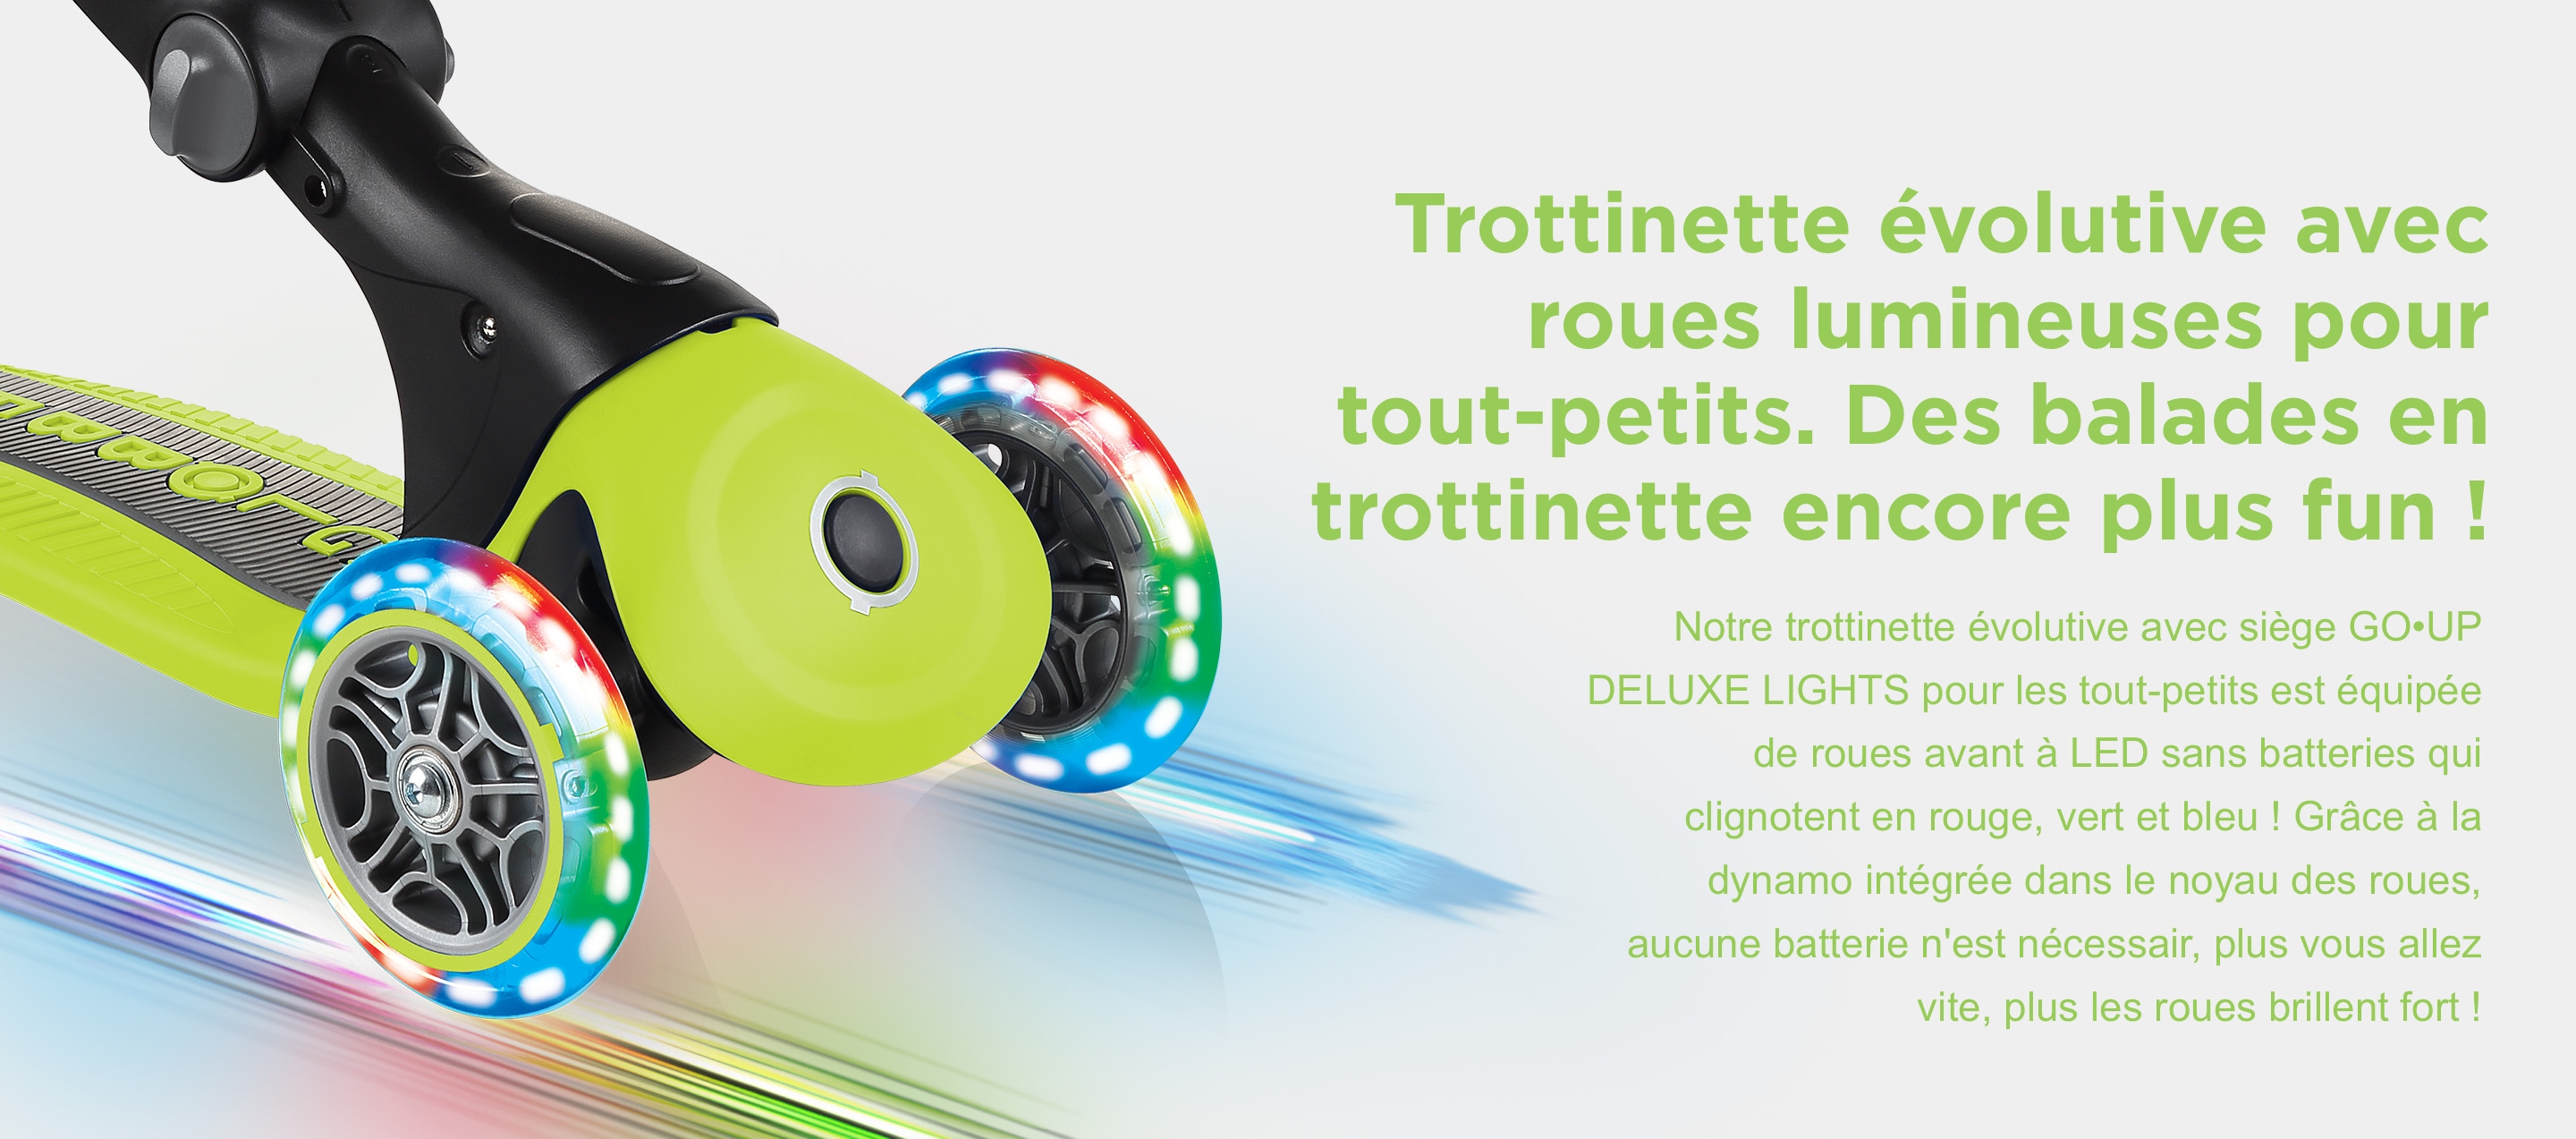 Trottinette évolutive avec roues lumineuses pour tout-petits. Des balades en trottinette encore plus fun !